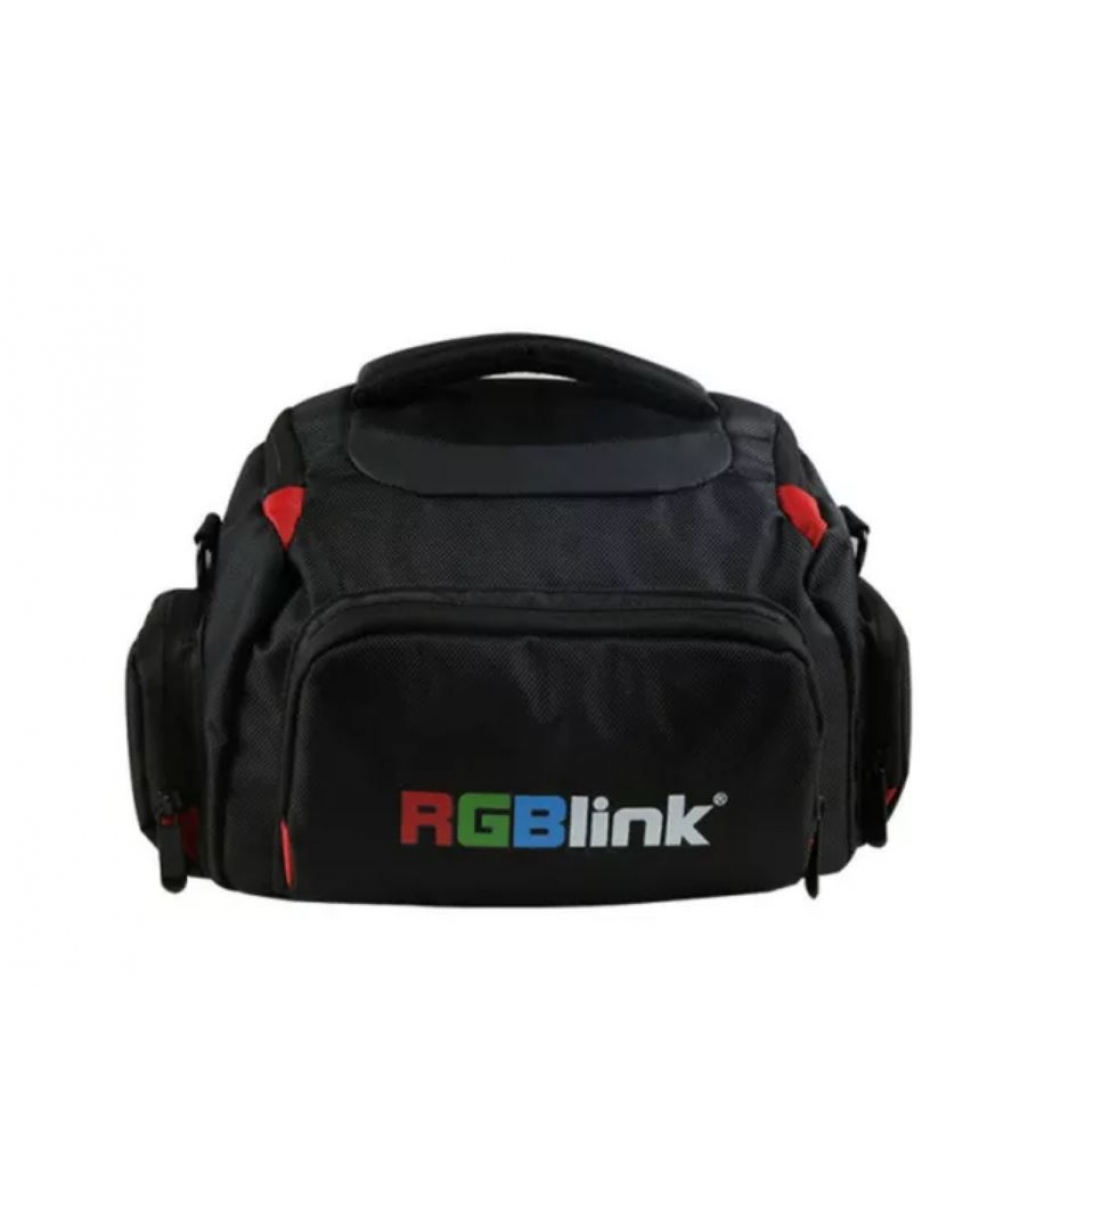 RGBLINK Shoulder Bag - Small